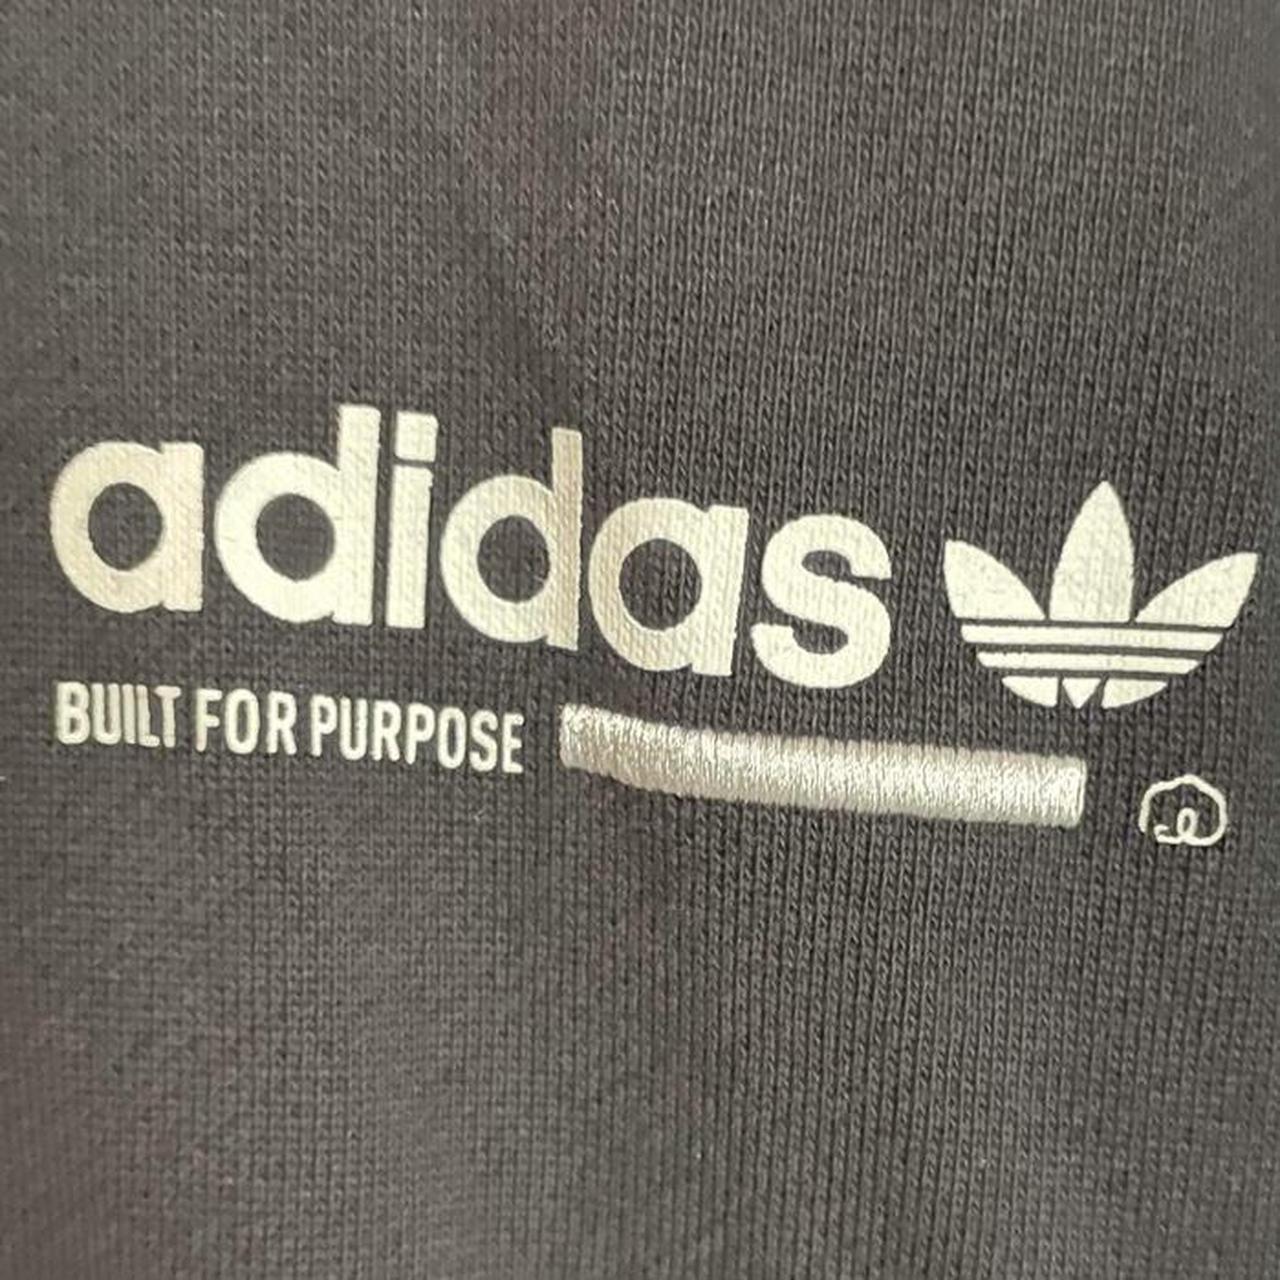 Adidas “built for purpose” black hoodie 👕 Vintage... - Depop